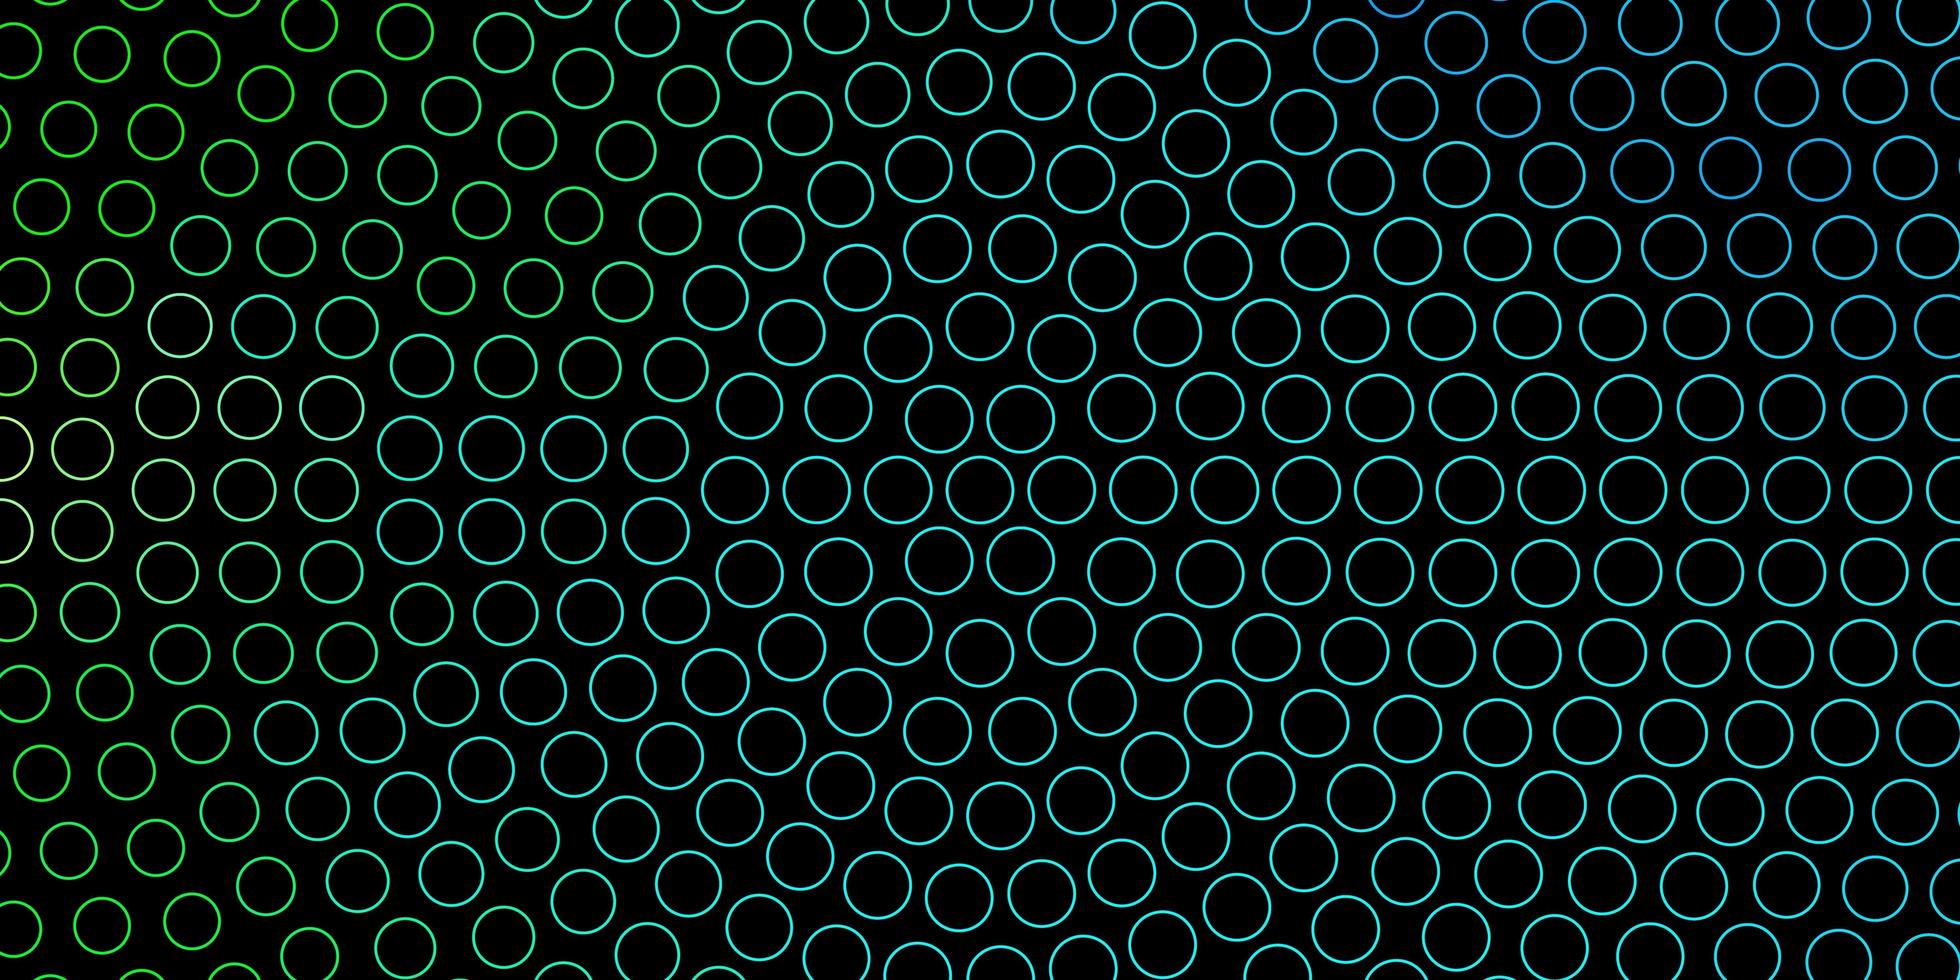 sfondo vettoriale verde blu scuro con cerchi